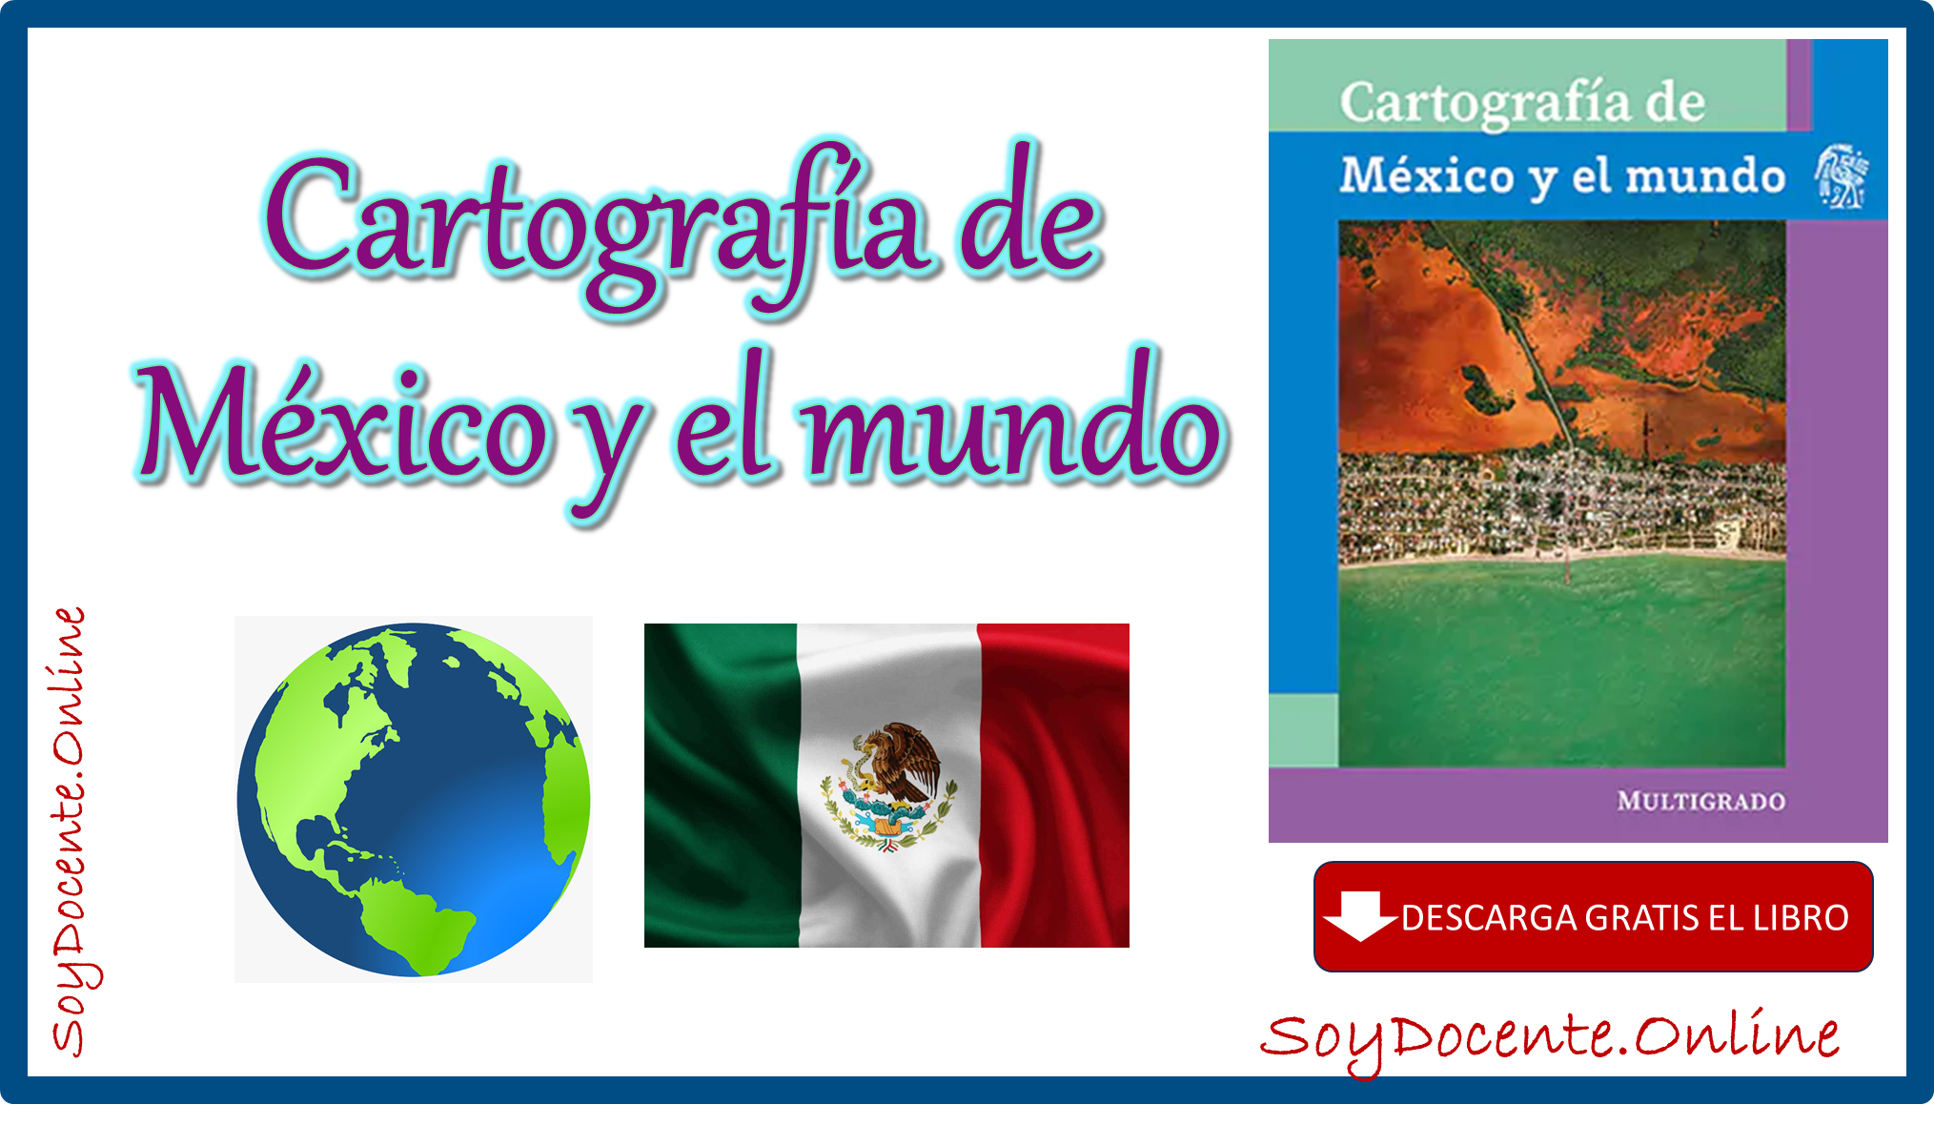 Descarga en PDF el Libro de Cartografía de México y el mundo de quinto de Primaria obra oficial de la SEP, distribuido por la CONALITEG. Gratis